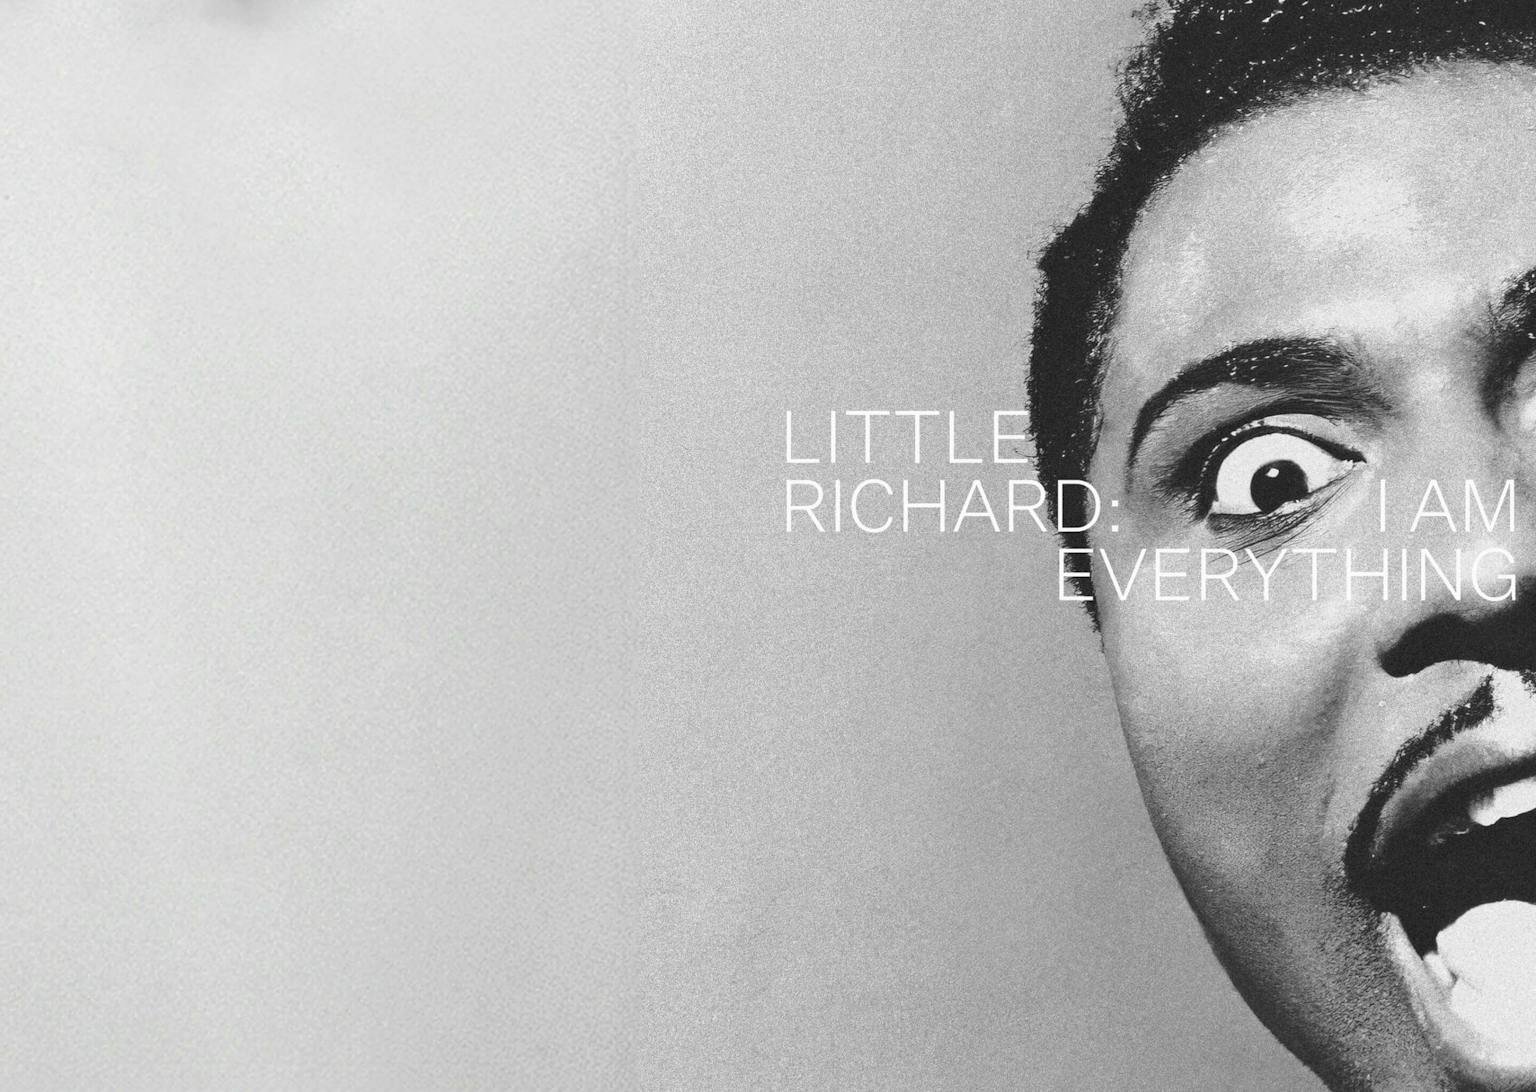 Little Richard - I am everything